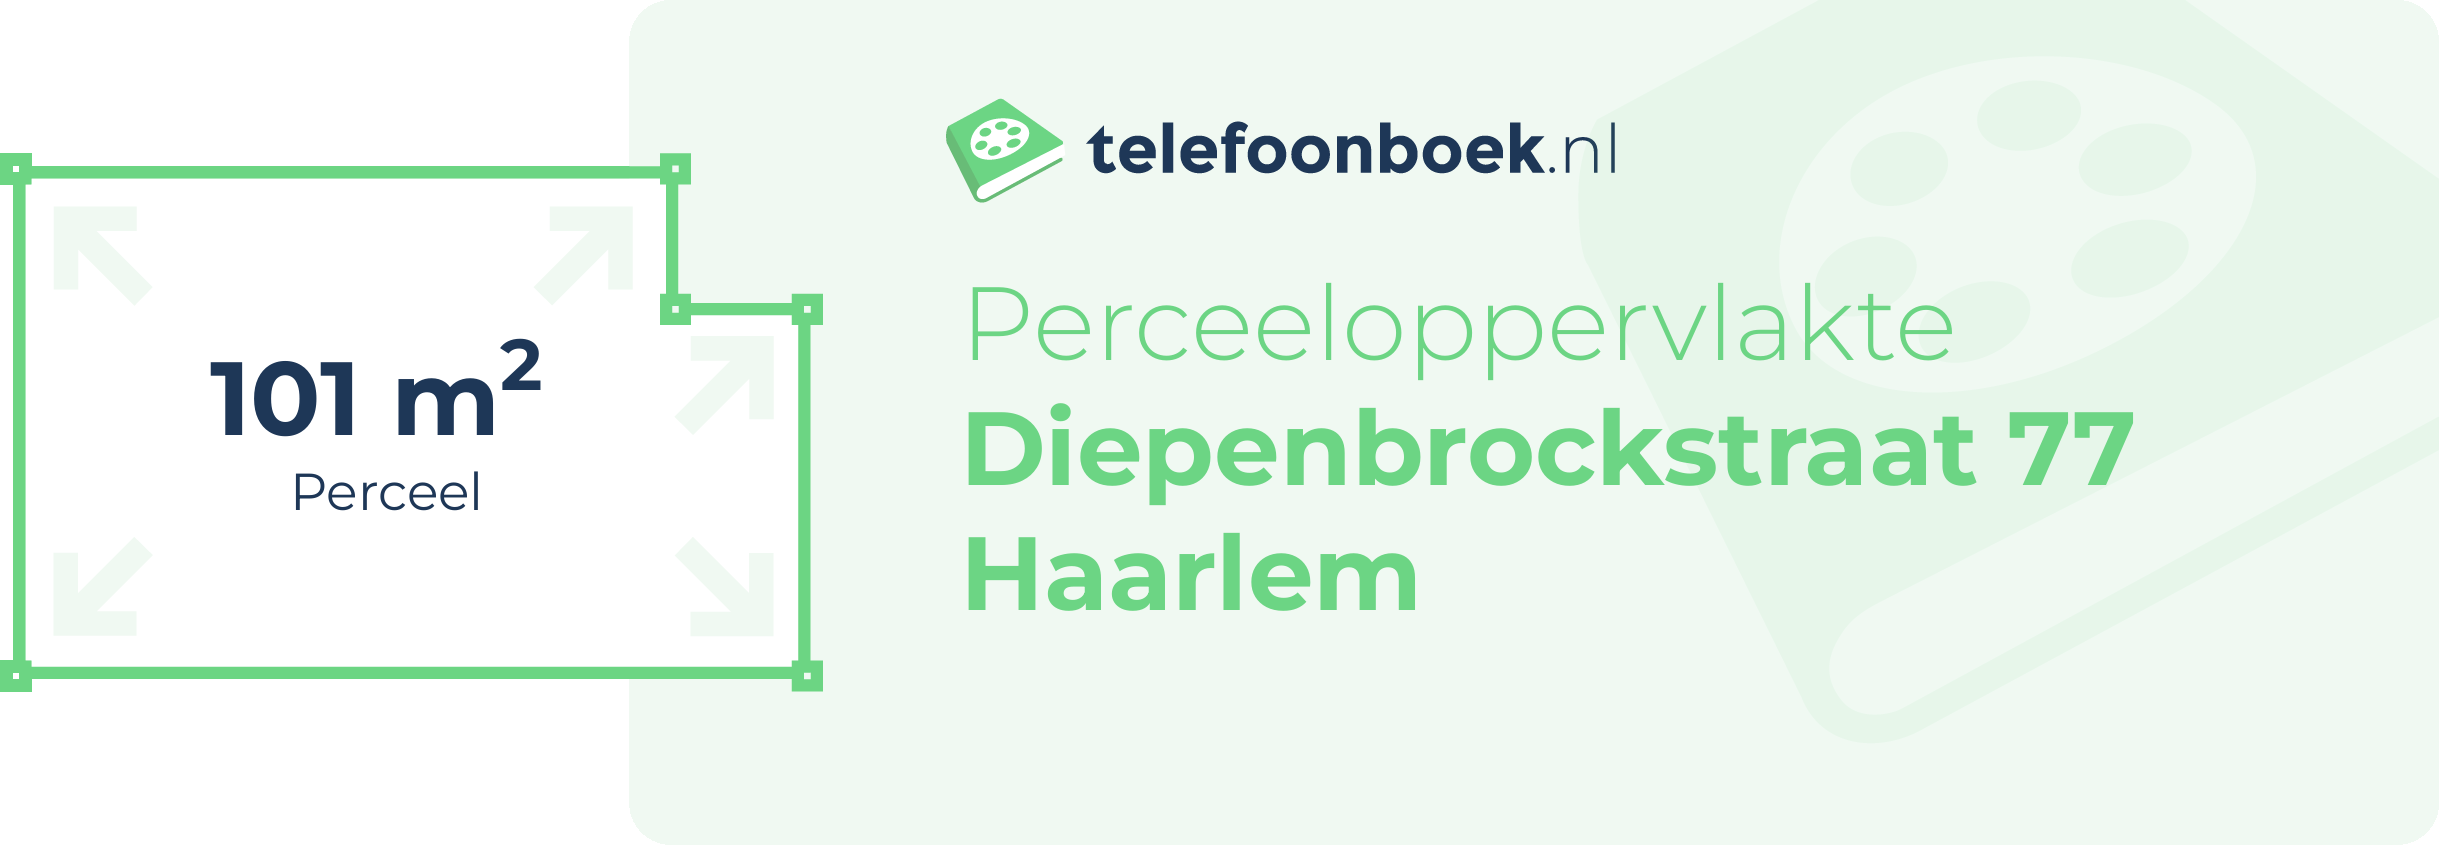 Perceeloppervlakte Diepenbrockstraat 77 Haarlem